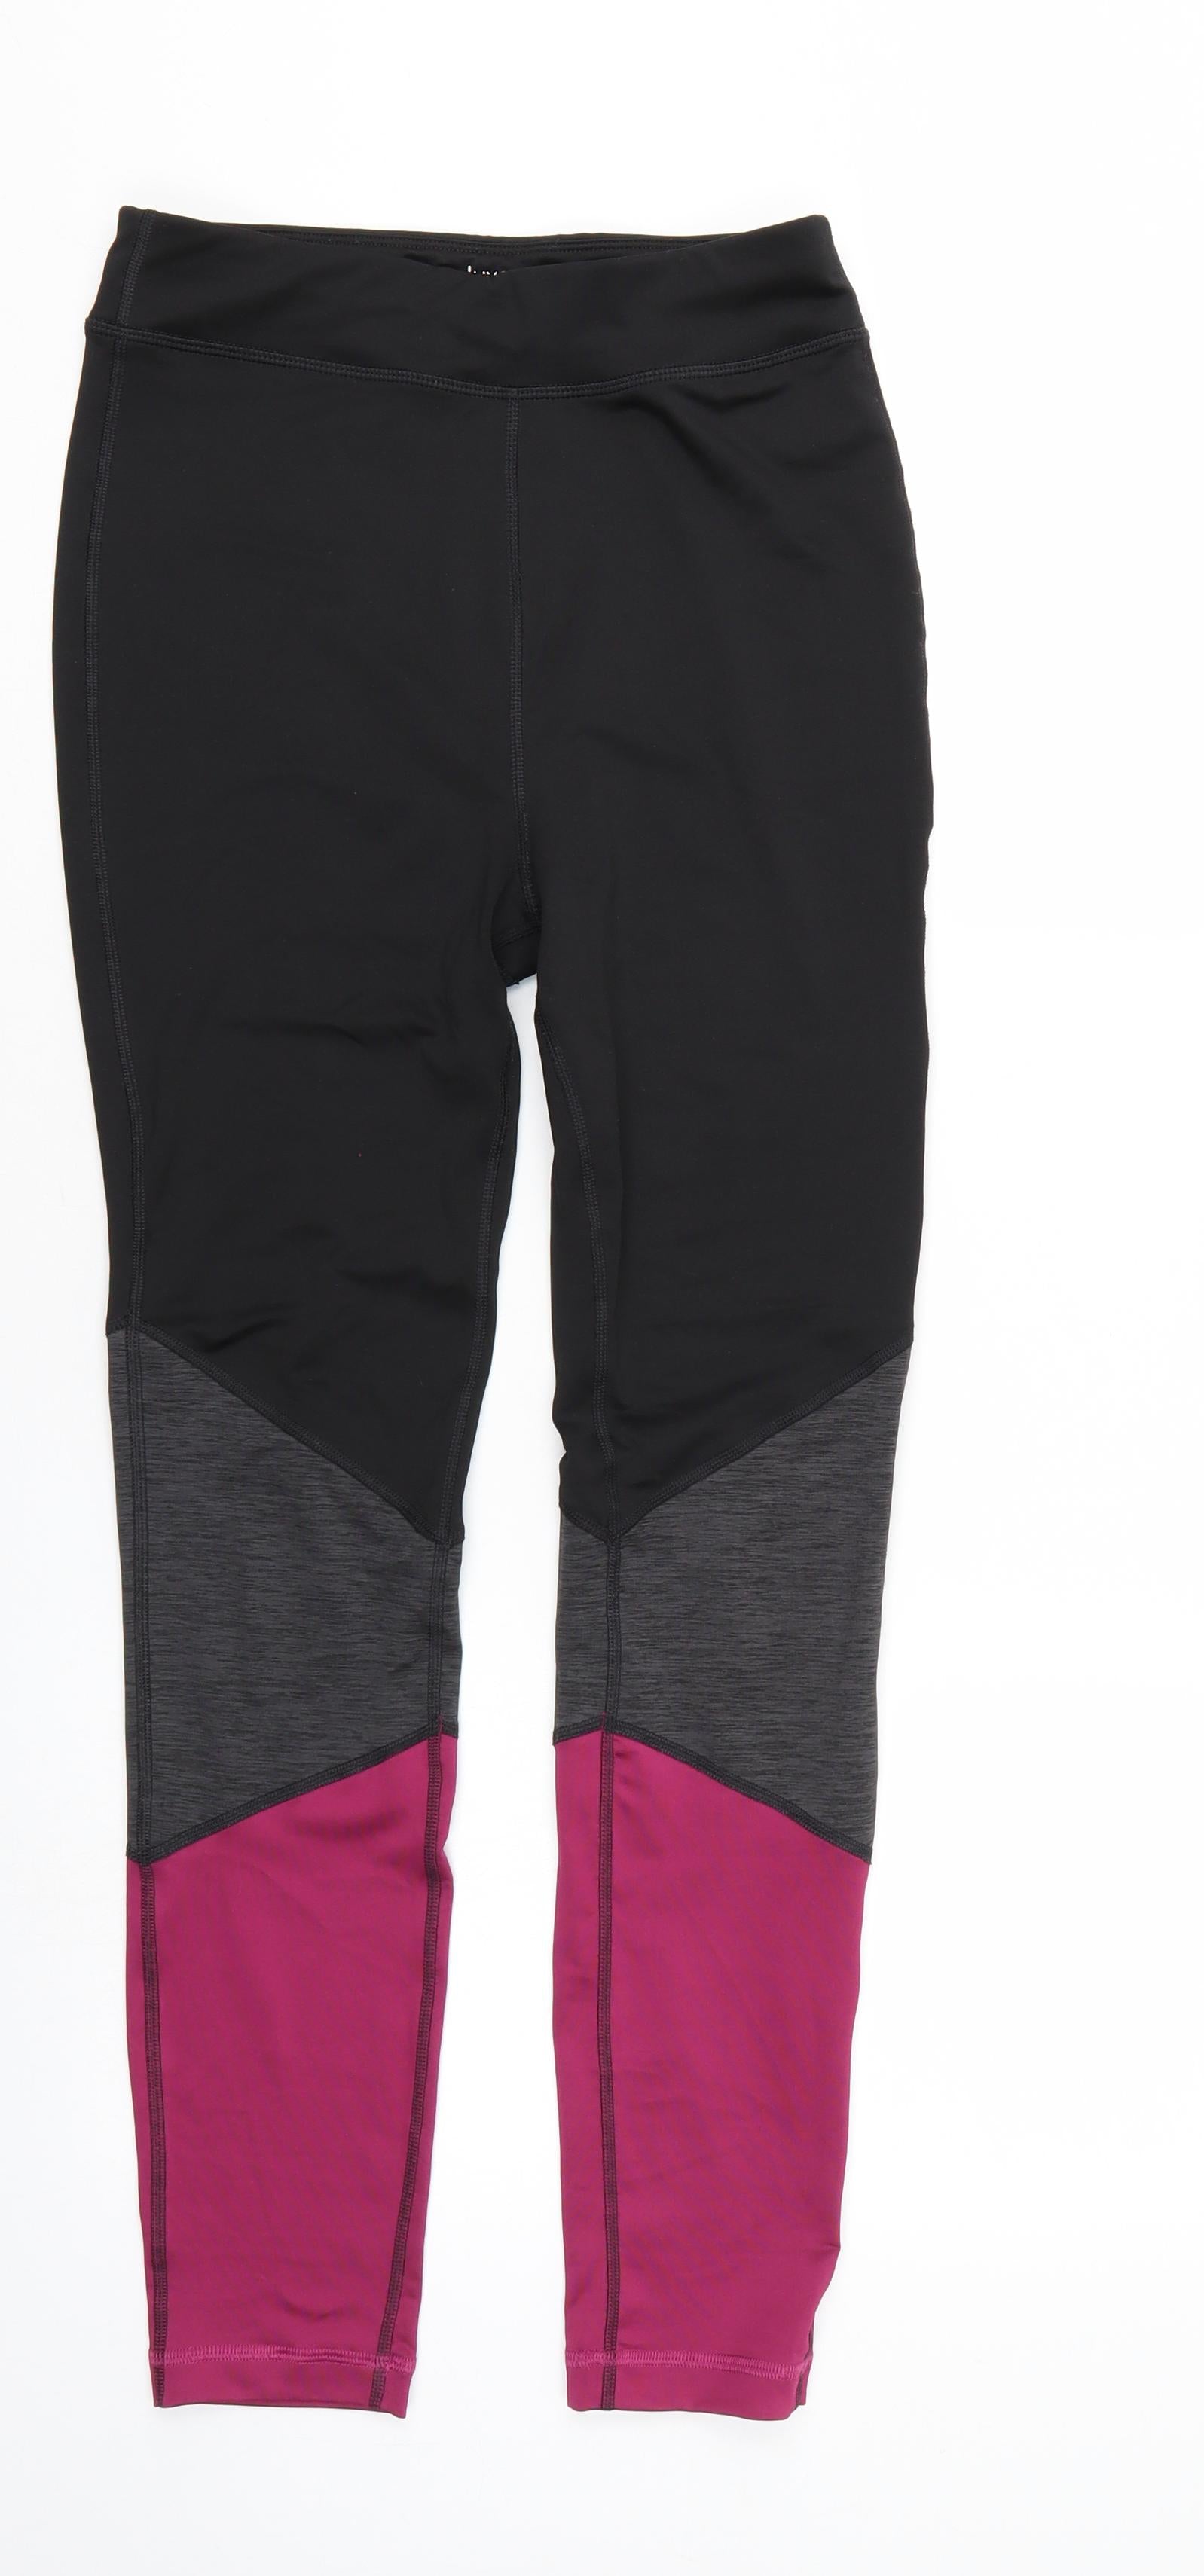 Souluxe Girls Multicoloured Sweatpants Trousers Size 15 Years - runnin –  Preworn Ltd